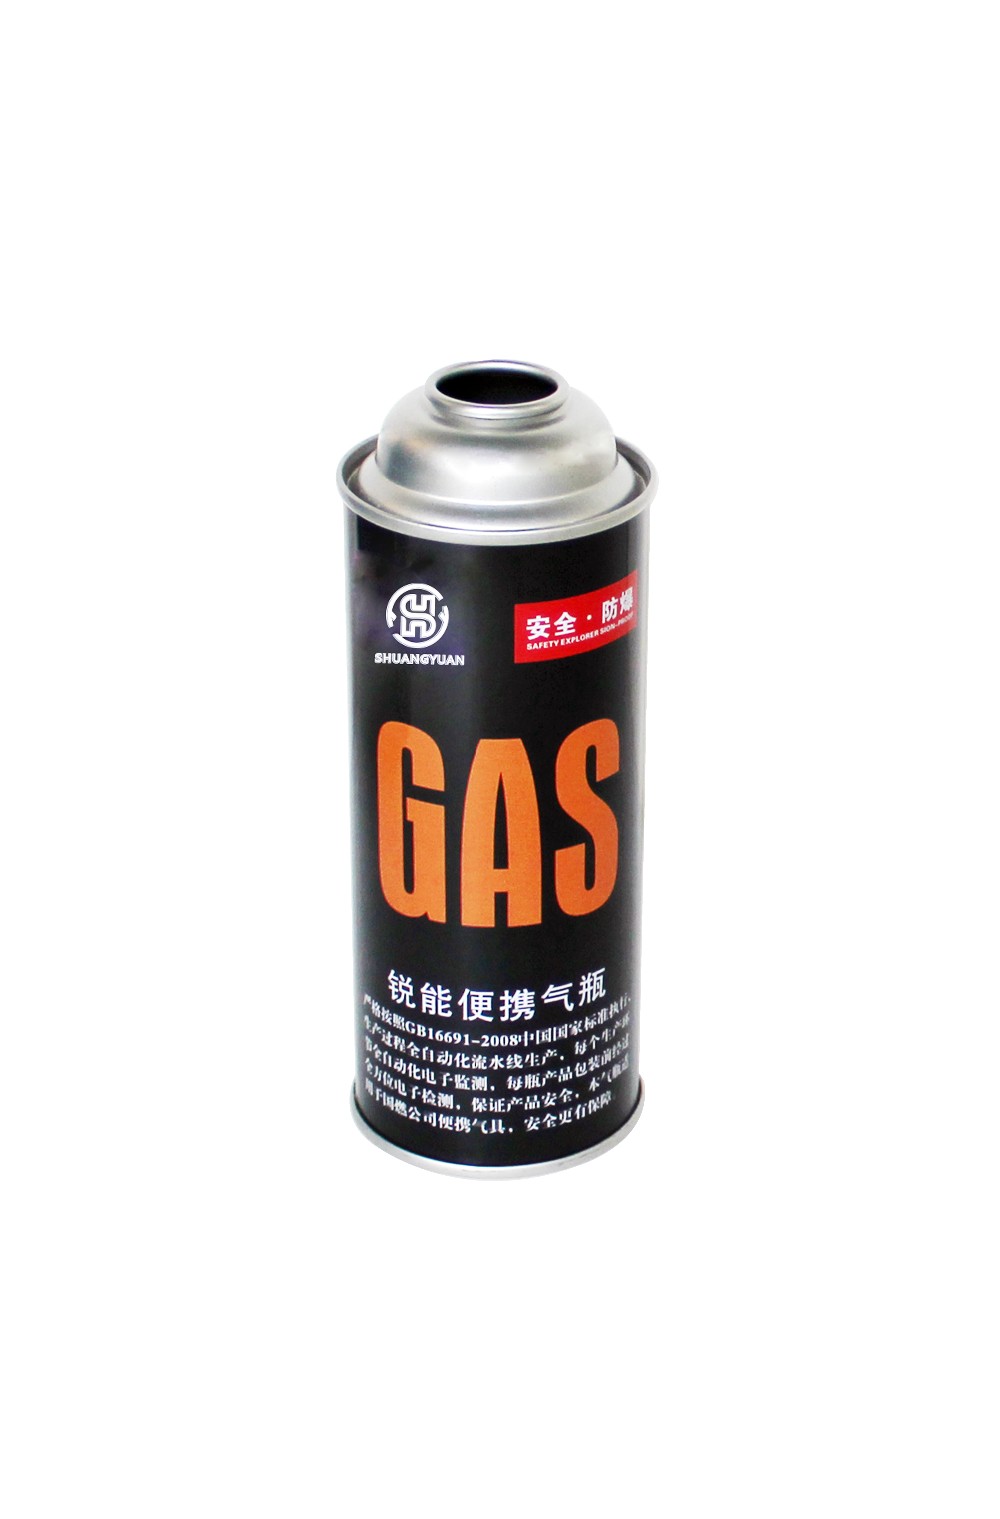 캠핑 가스 깡통/카트리지 가스 깡통/스토브 가스 깡통/카트리지 가스 깡통